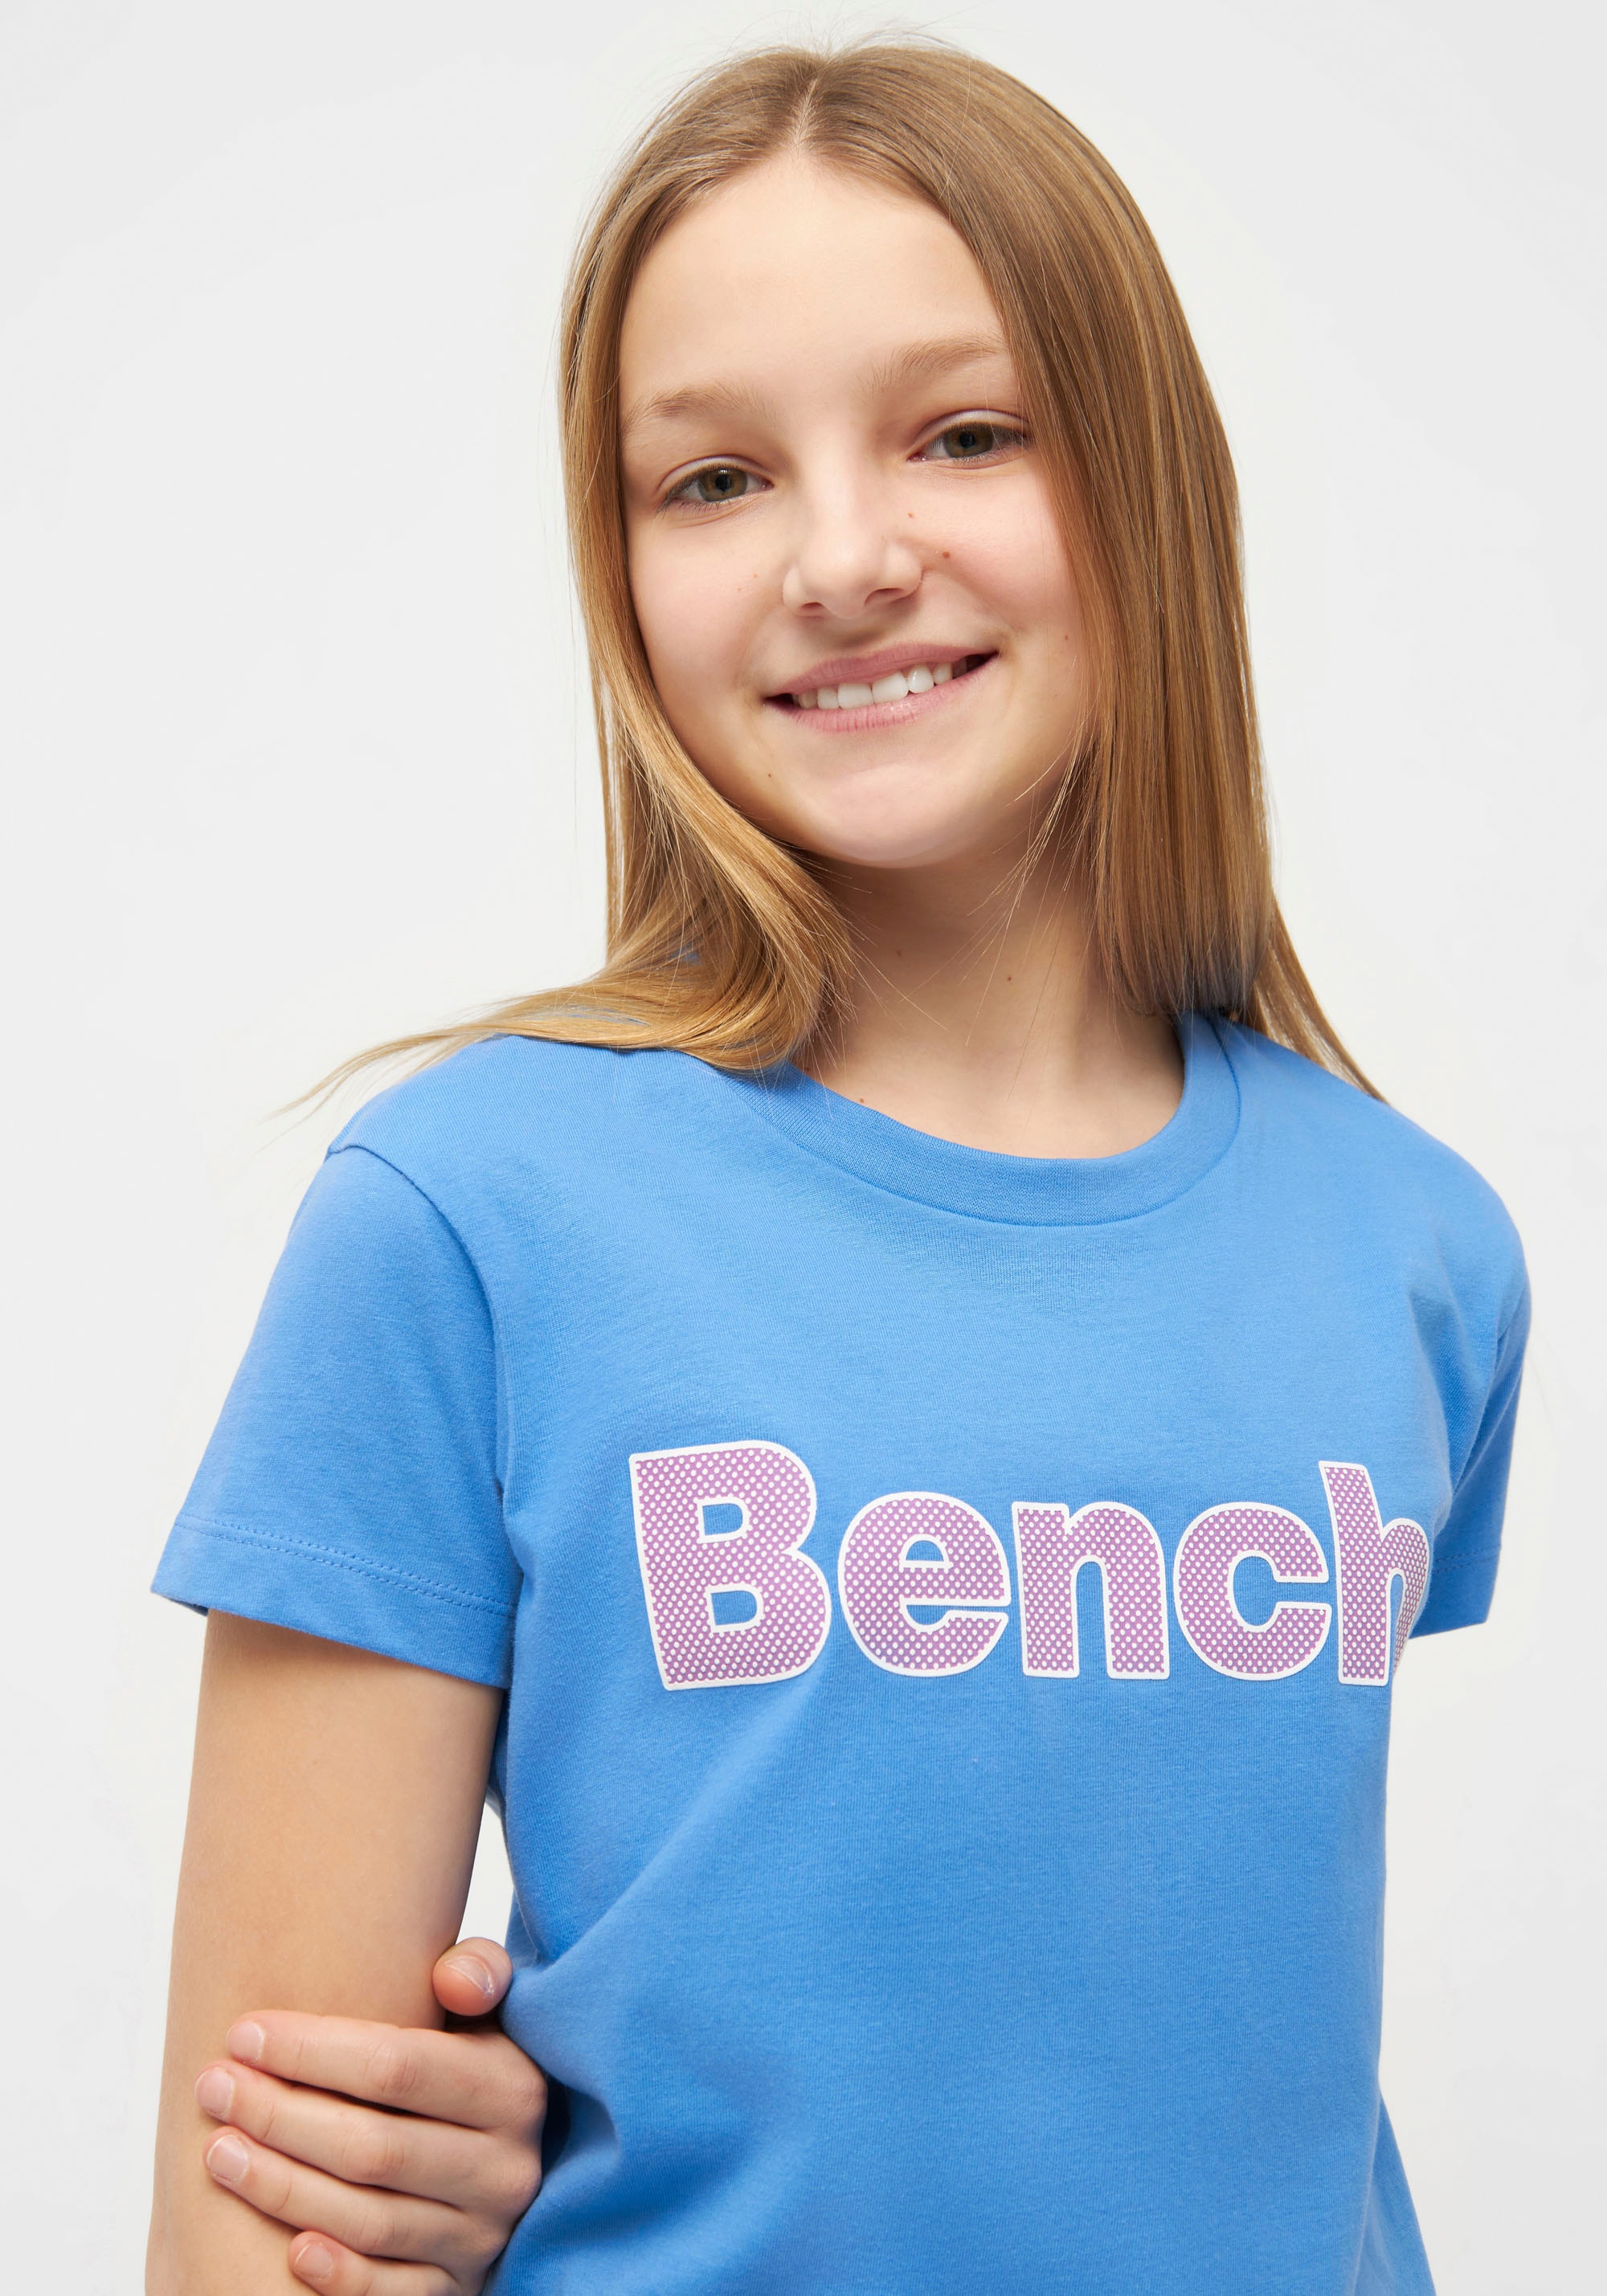 Bench. T-Shirt »LEORAG« kaufen | BAUR